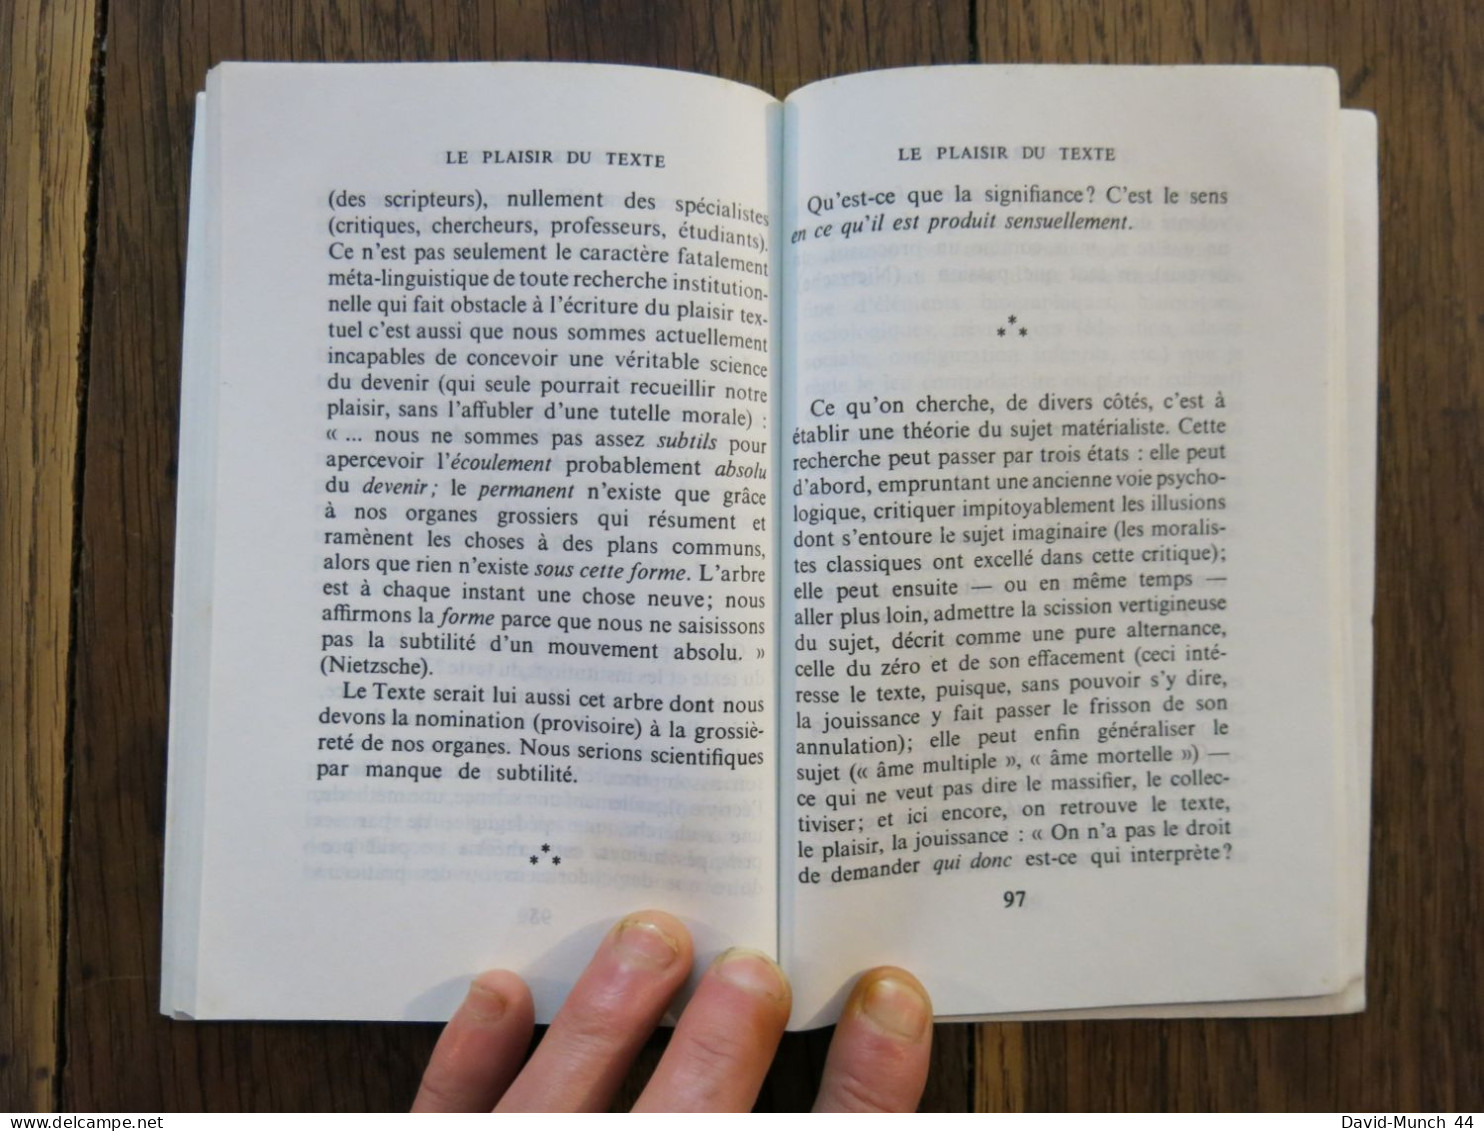 Le plaisir du texte de Roland Barthes. Editions du Seul, Points. 1973